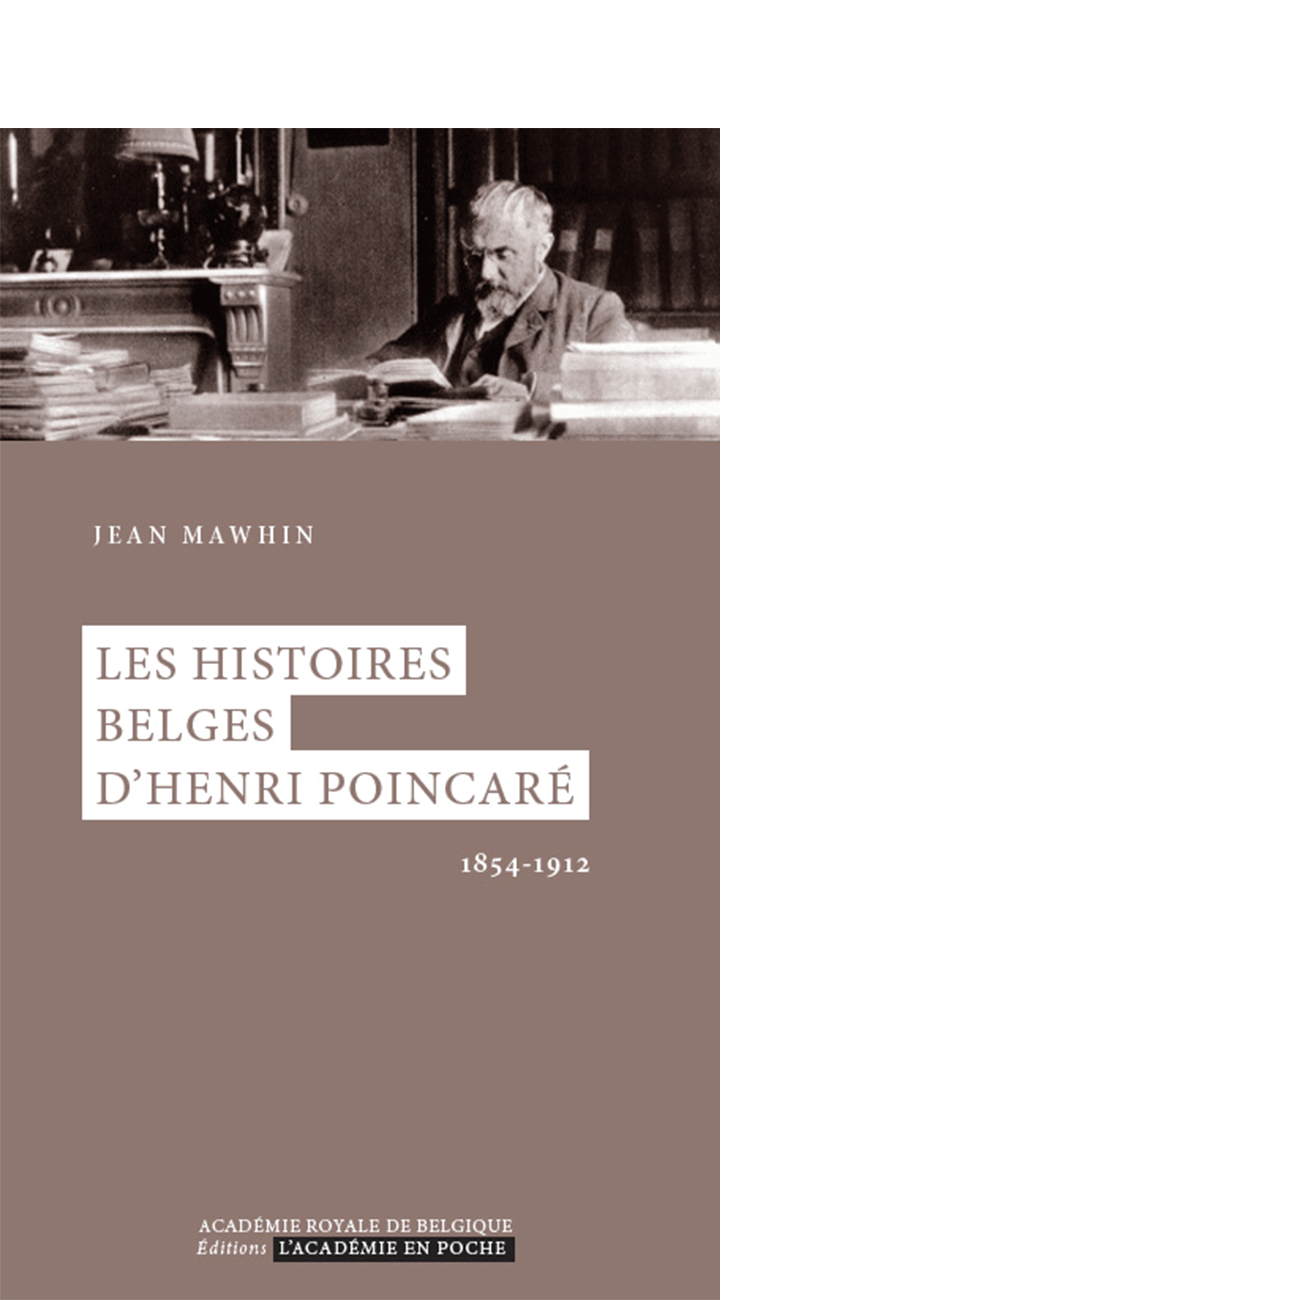 Les histoires belges d'Henri Poincaré